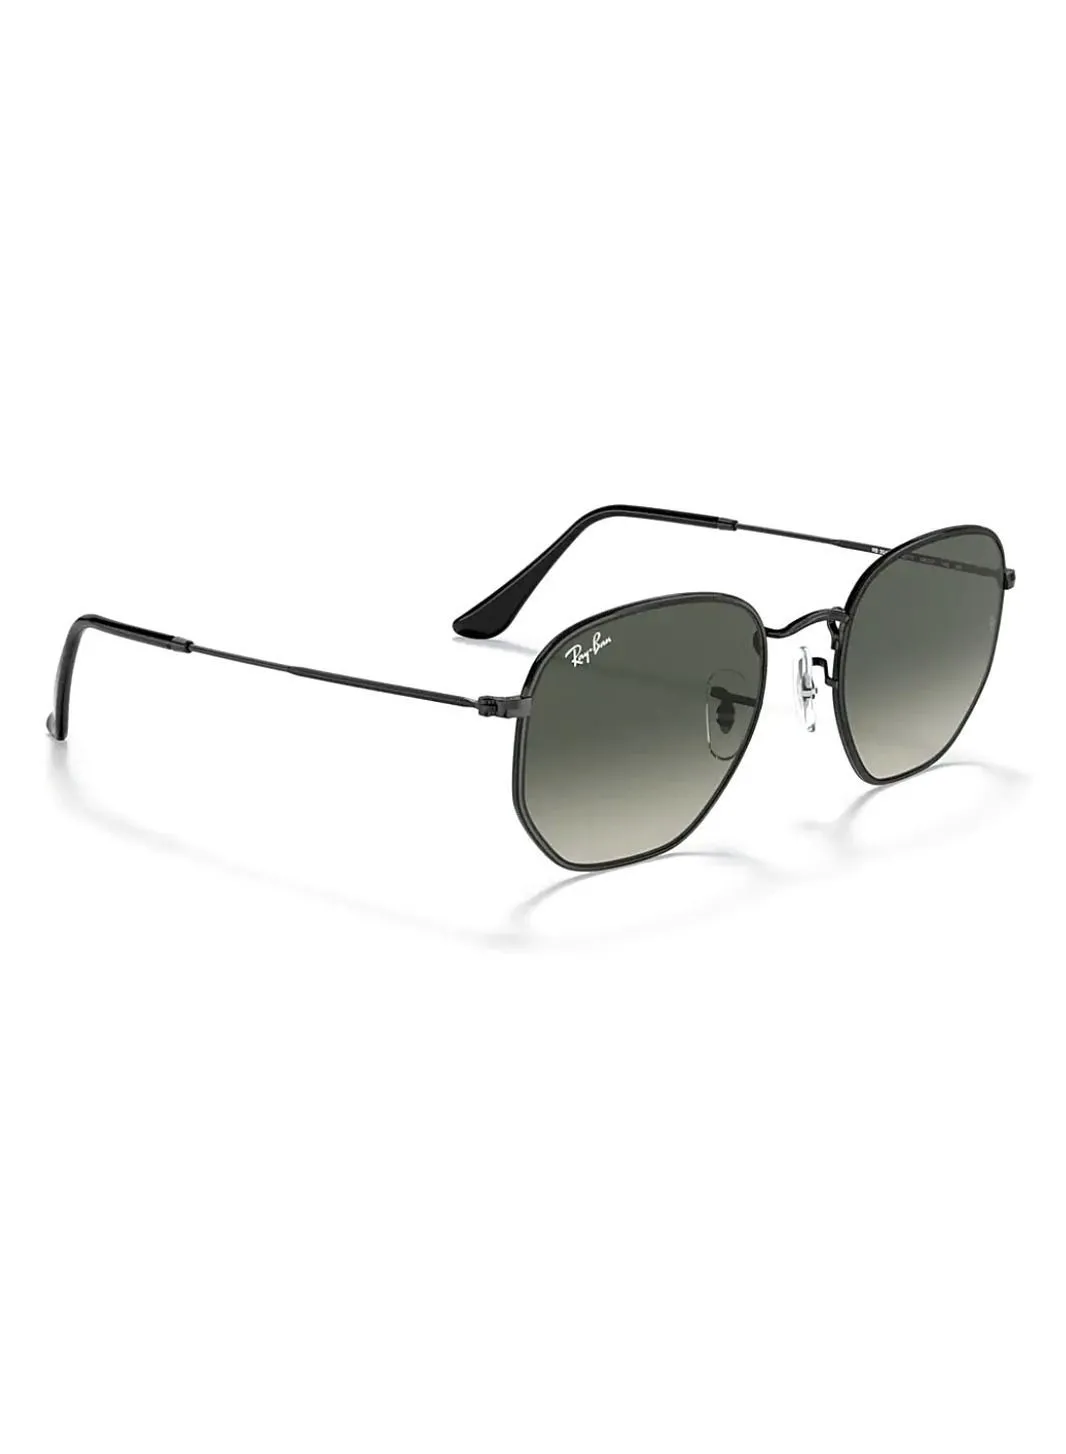 نظارات راي بان الشمسية ذات العدسات المسطحة السداسية - مقاس العدسة: 51 ملم